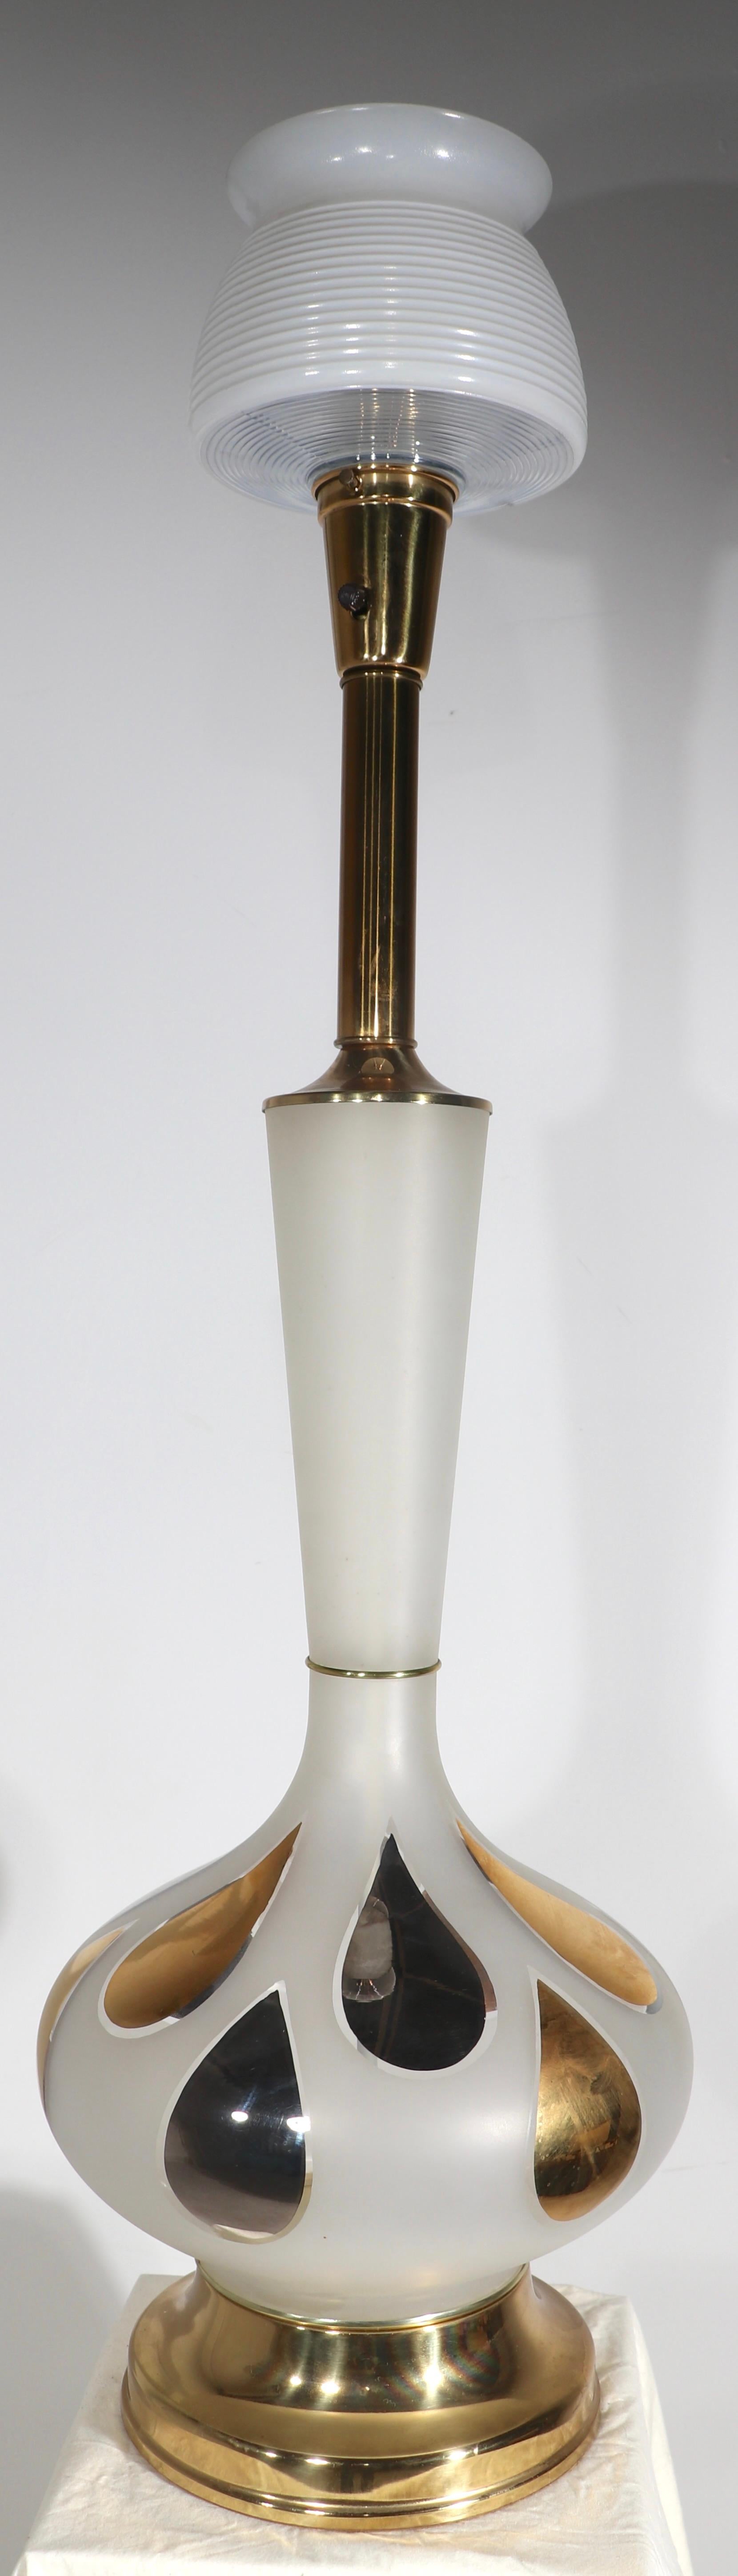 Lampe de table chic, élégante et stylée en feuille d'or et verre, en excellent état, original, propre et fonctionnel. D'une taille impressionnante, cette lampe est livrée complète avec son abat-jour d'origine. 
 Base de la lampe - H total 45